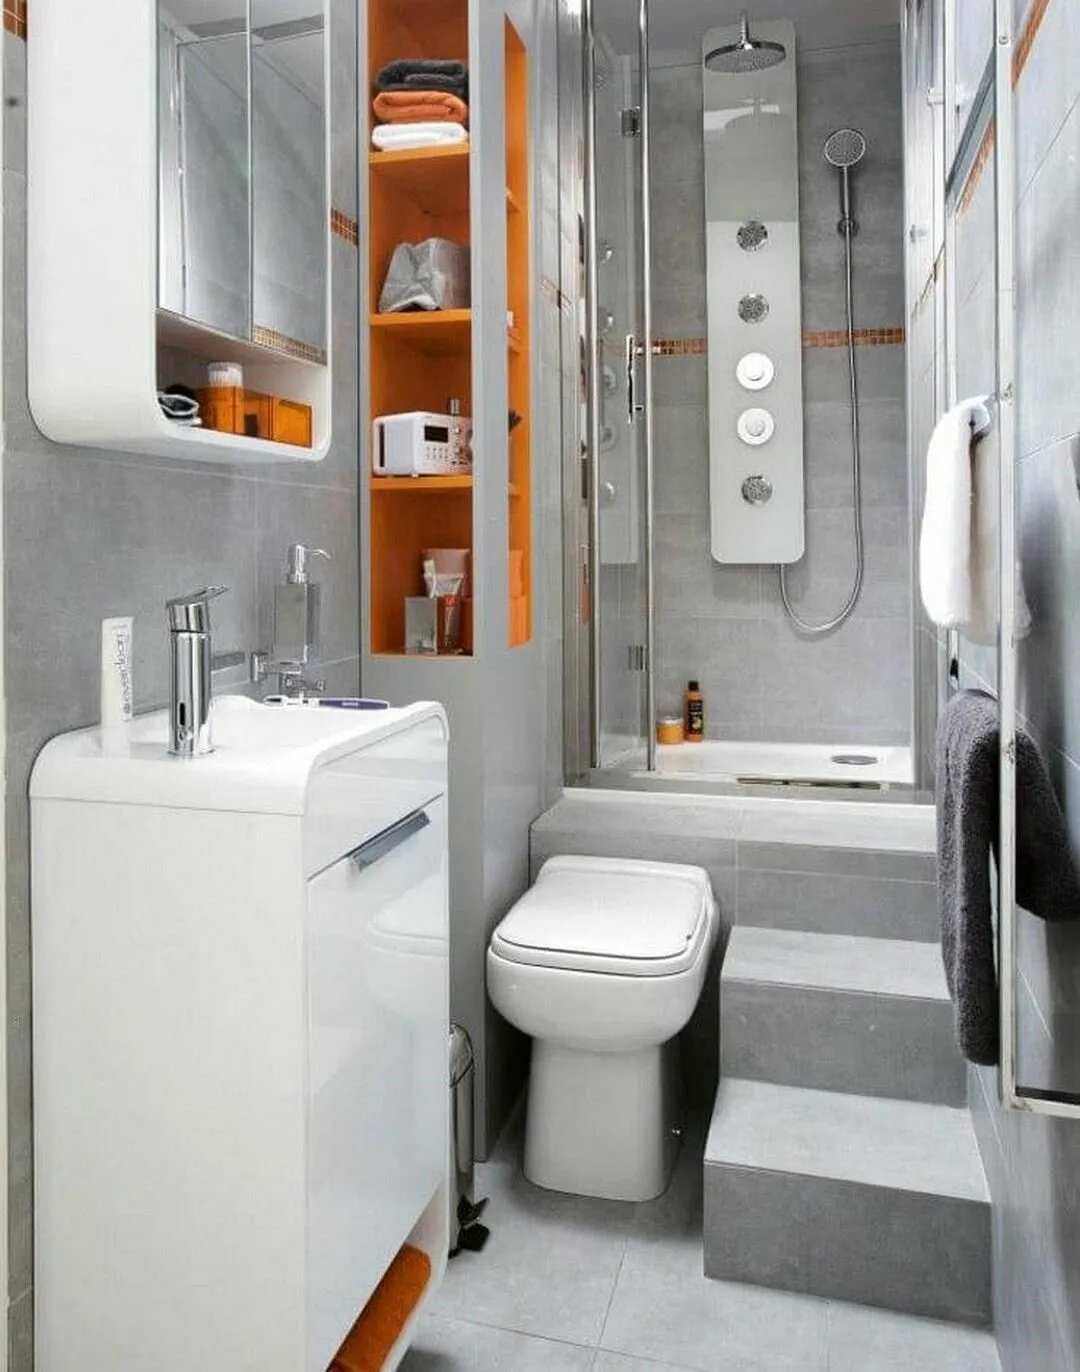 Ванная комната в хрущевке — фото лучших идей грамотного оформления интерьера ванной